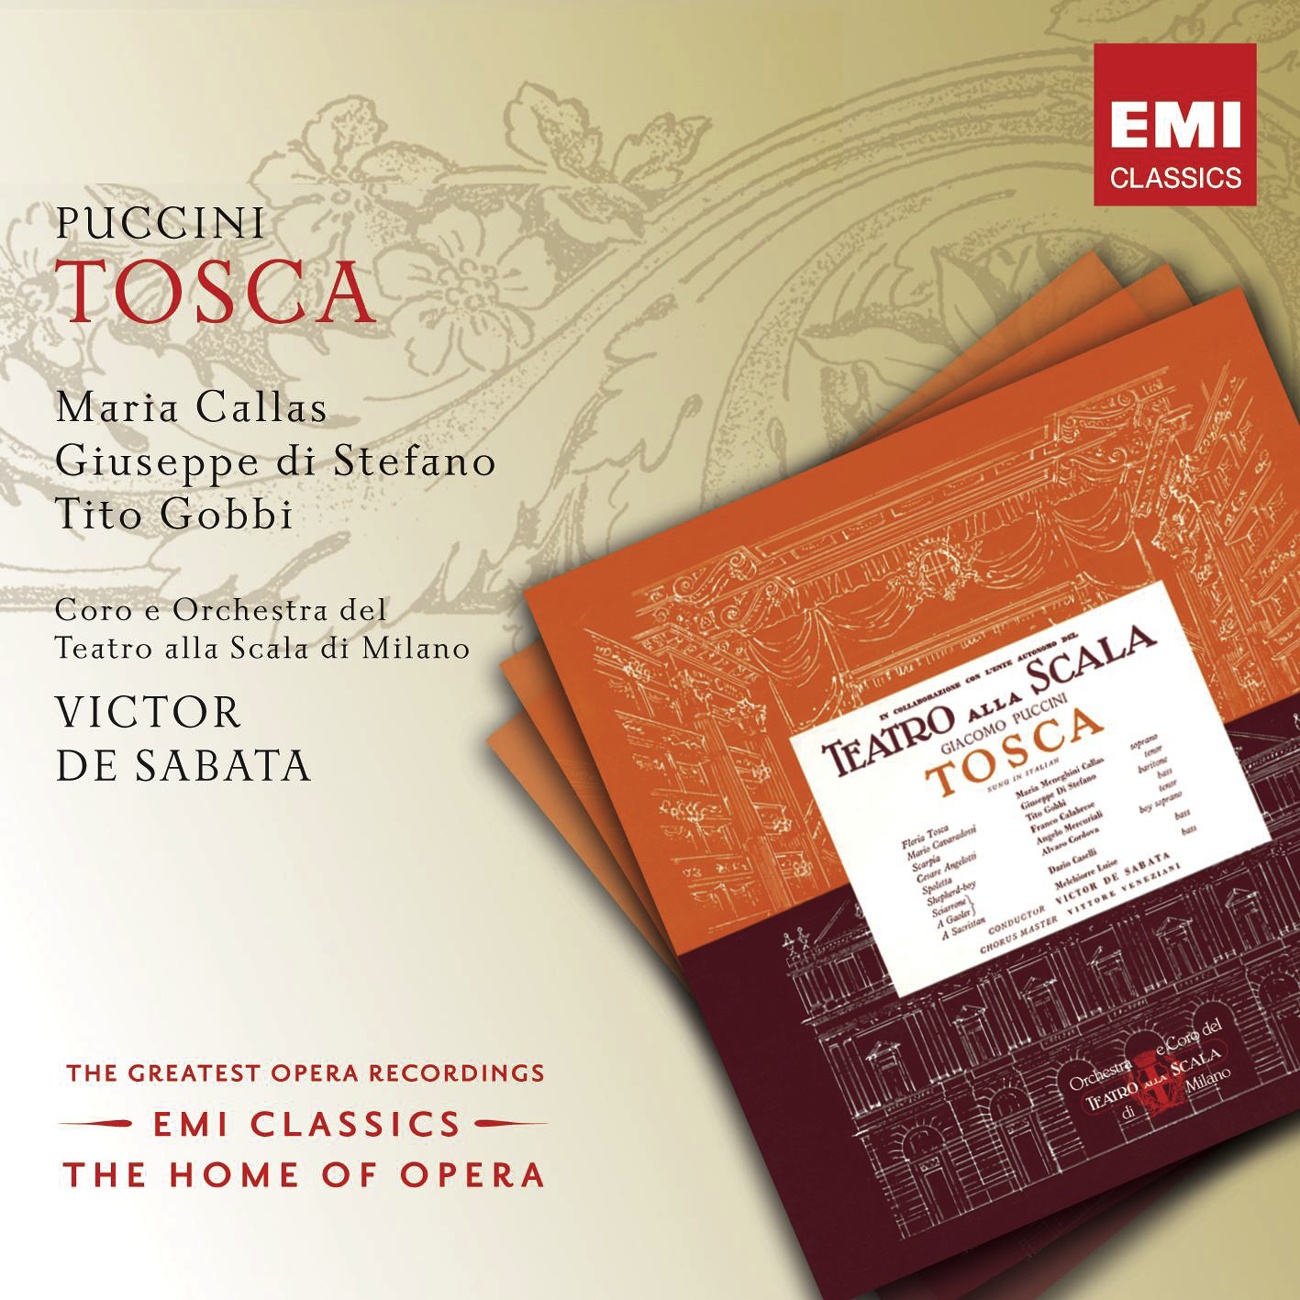 Tosca (2002 Digital Remaster), ACT ONE: Ed io venivo a lui tutta dogliosa (Tosca/Scarpia)